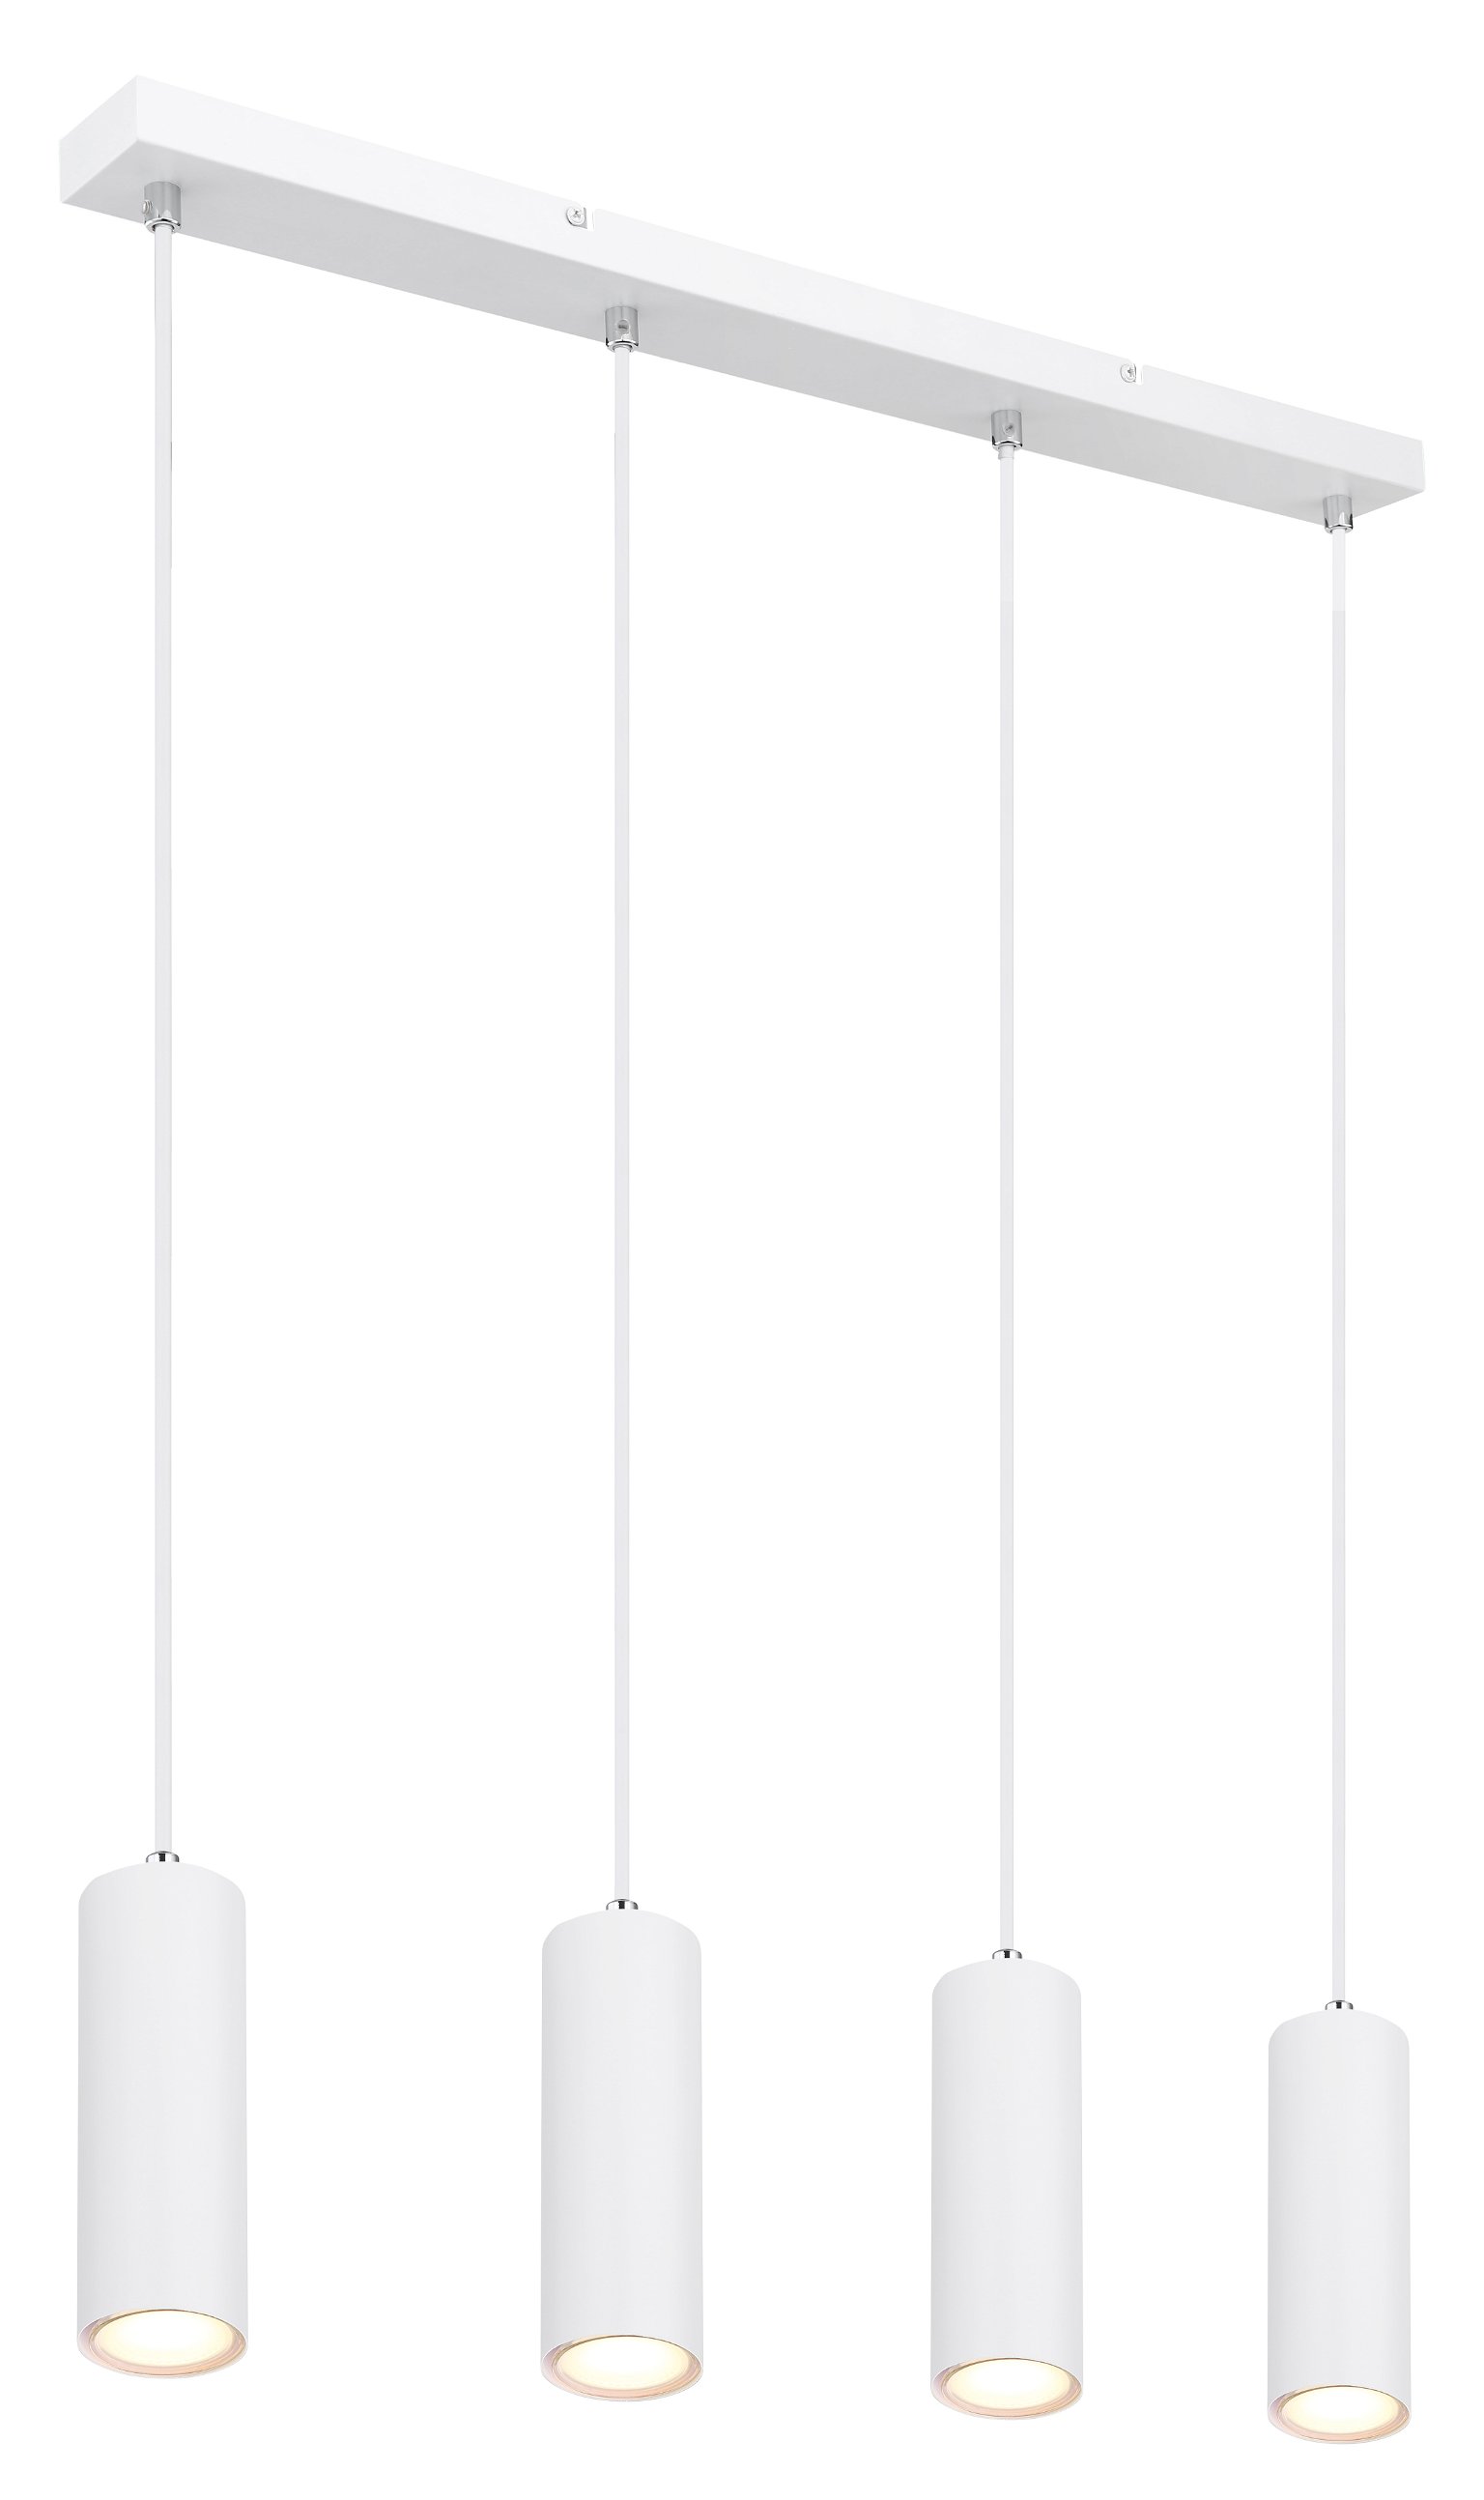 Pakabinamas šviestuvas GLOBO Robby, 4 x GU10, 35W, baltos sp., 6 x 65 x 120 cm